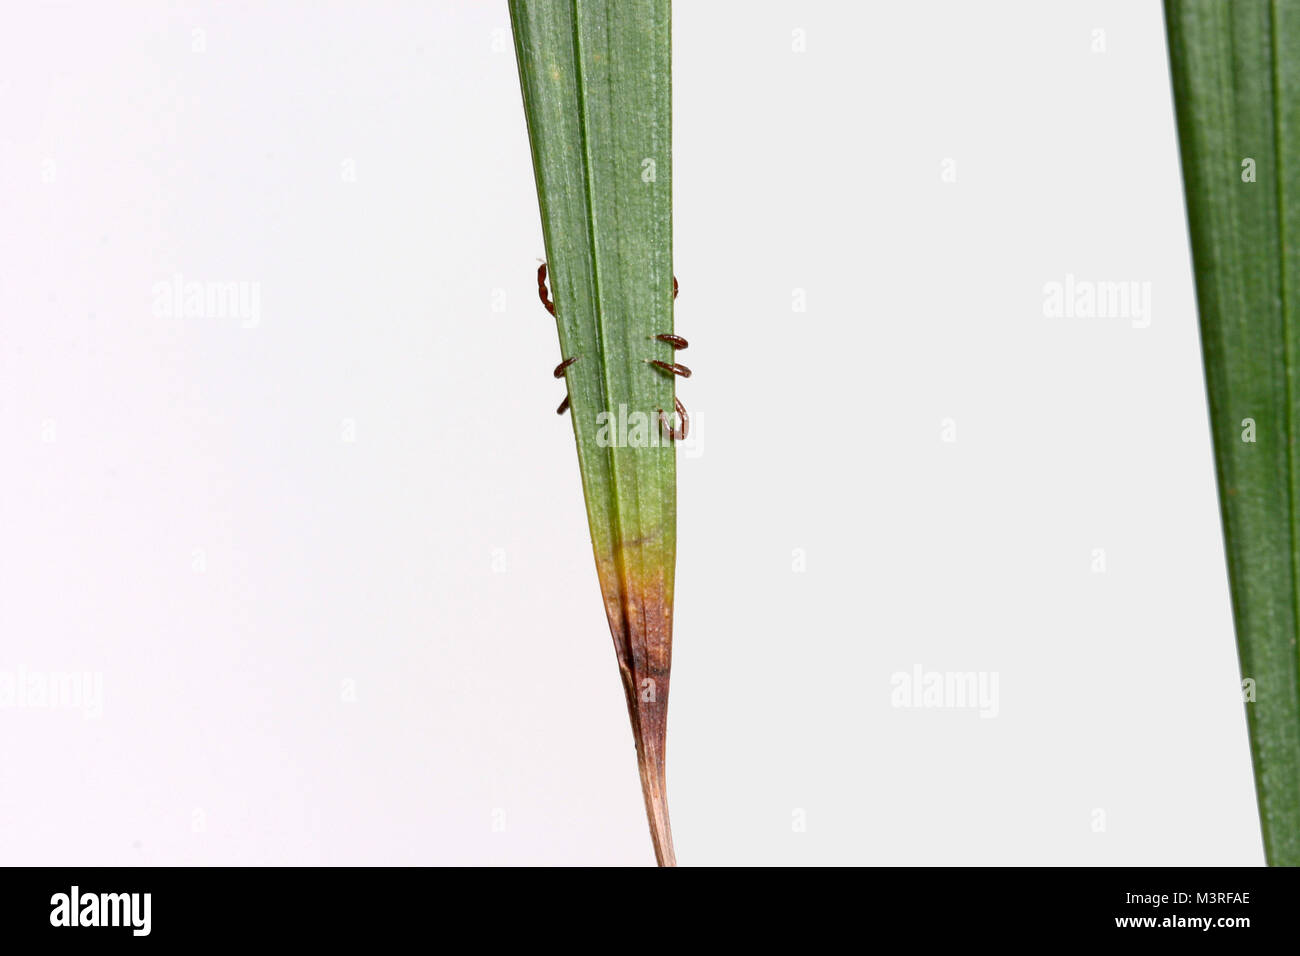 Beine eines Dermacentor variabilis auf eine Pflanze Blatt festhalten, die auch als American Dog Tick - diese Art von tick bekannt ist das Bakterium zu tragen Speichereinbauort bekannt Stockfoto